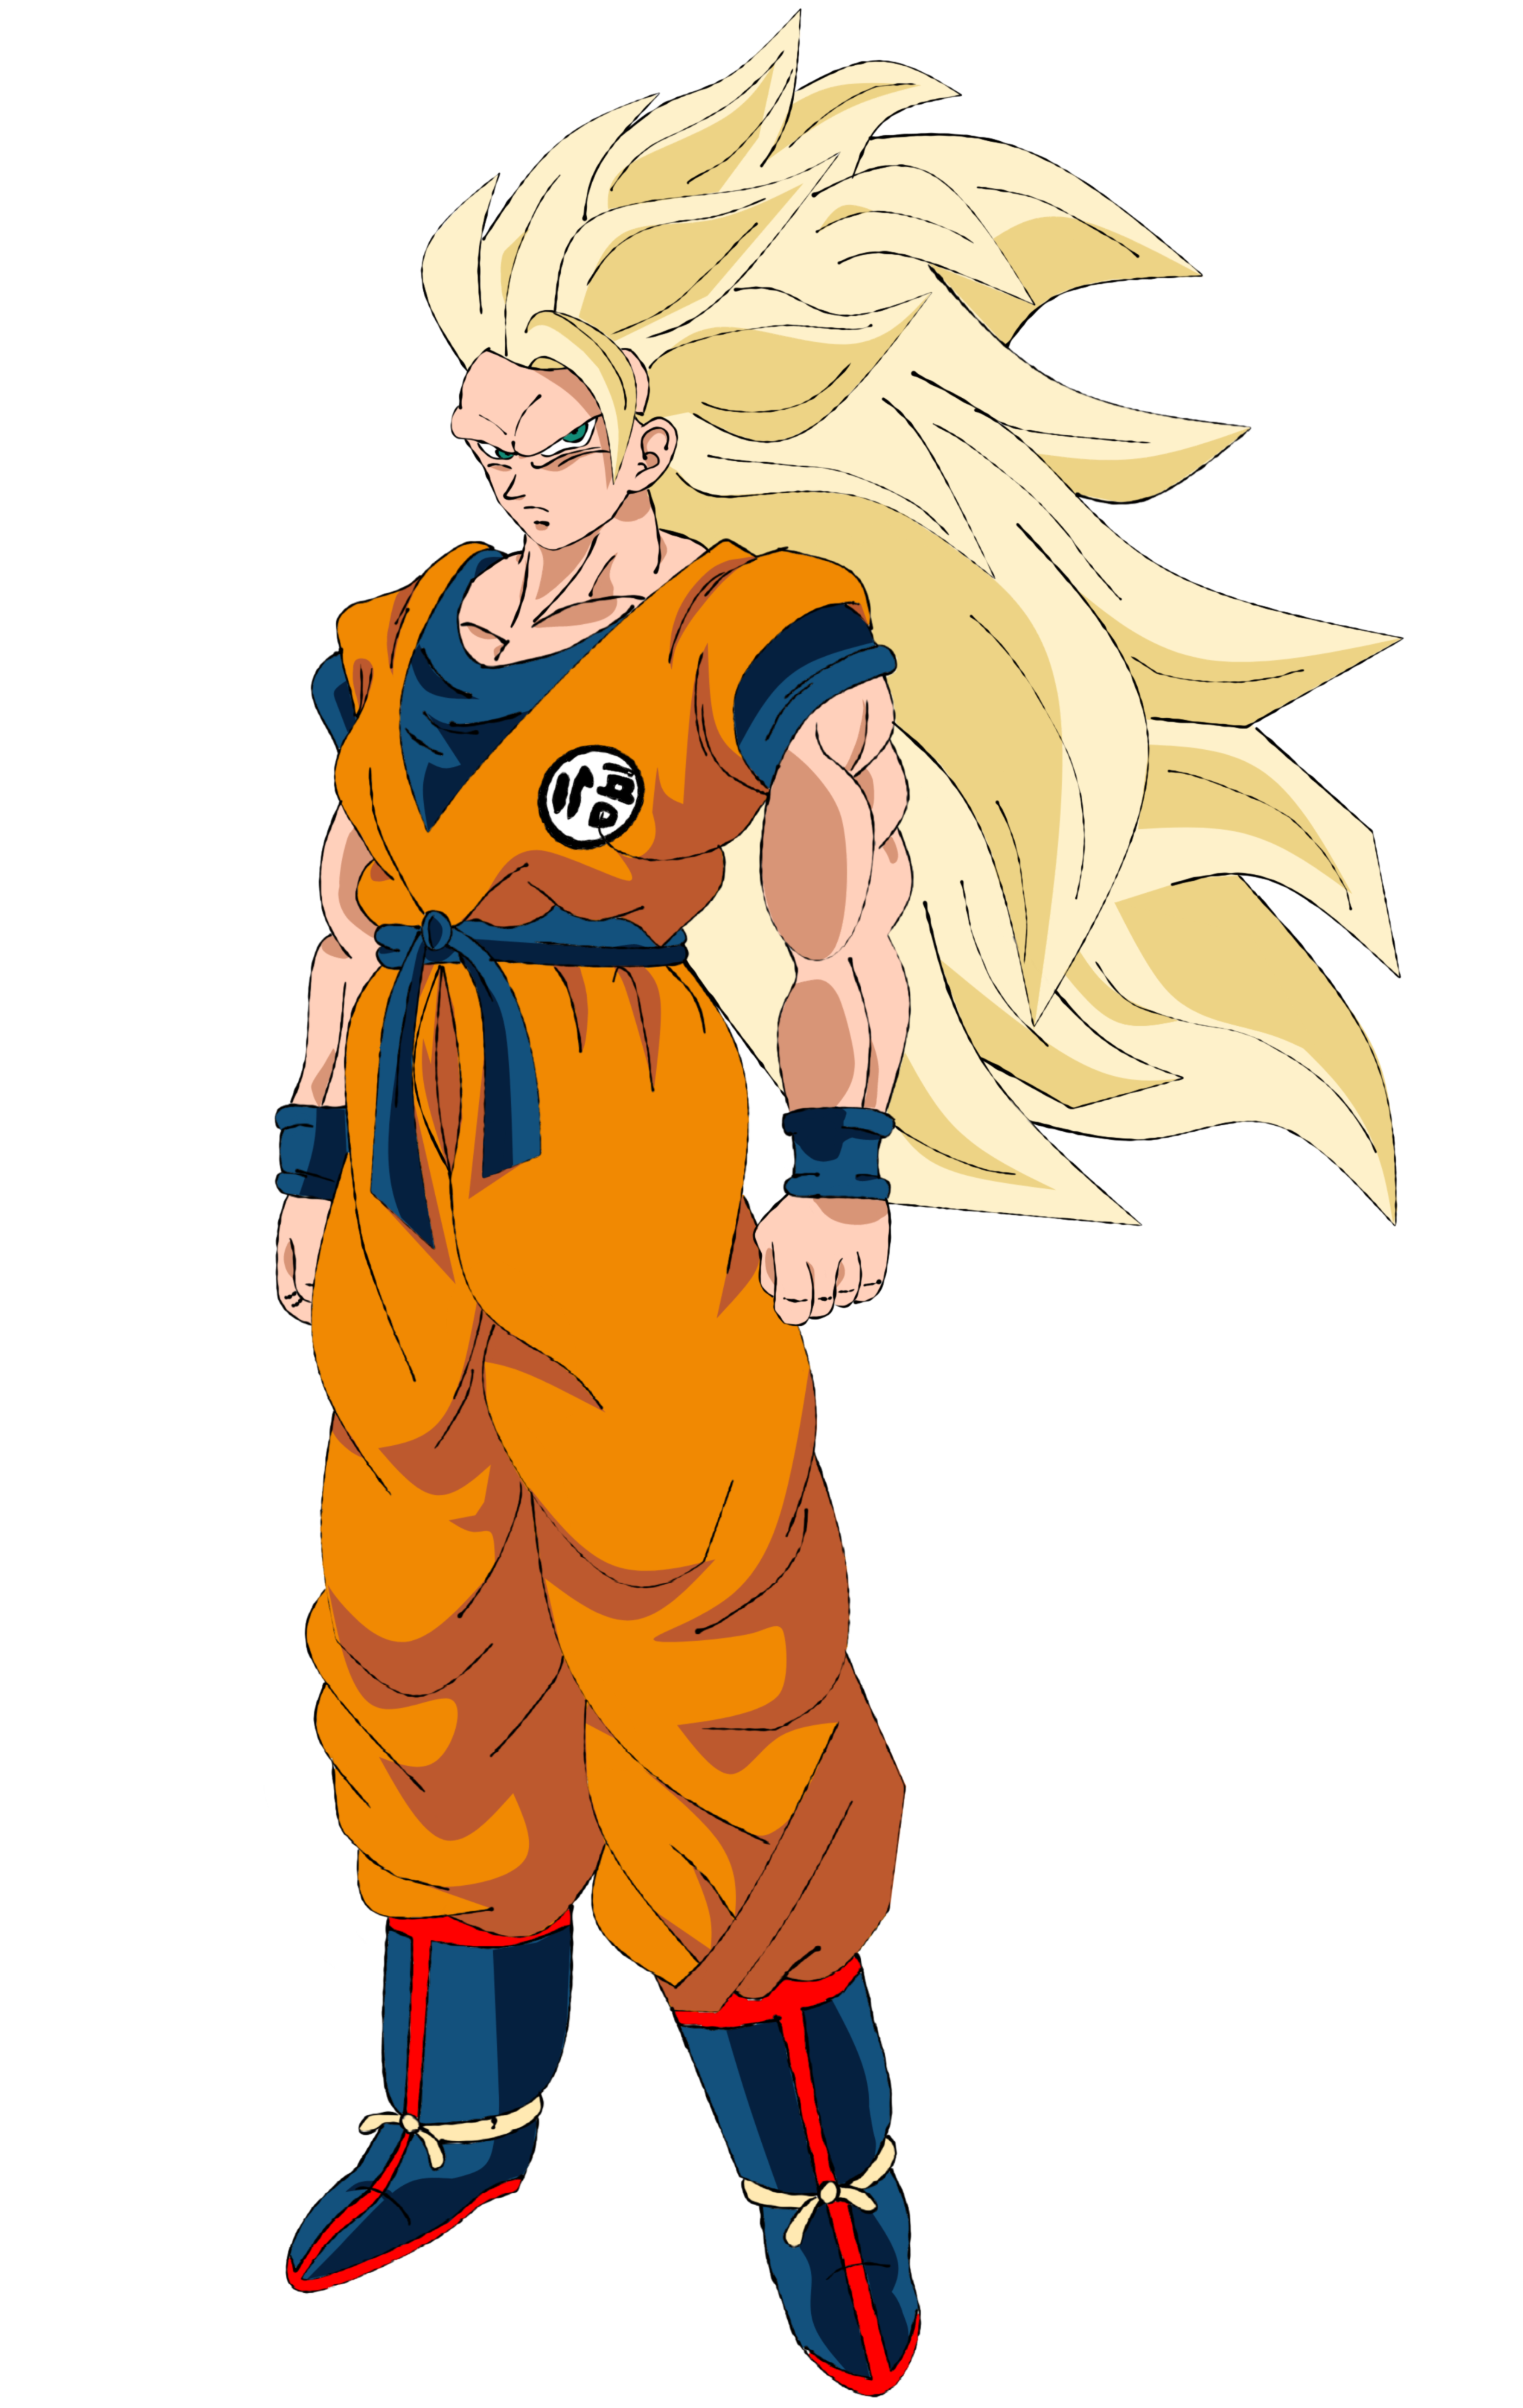 Goku Super Saiyan 3 (Whis Gi) by jagsons on DeviantArt